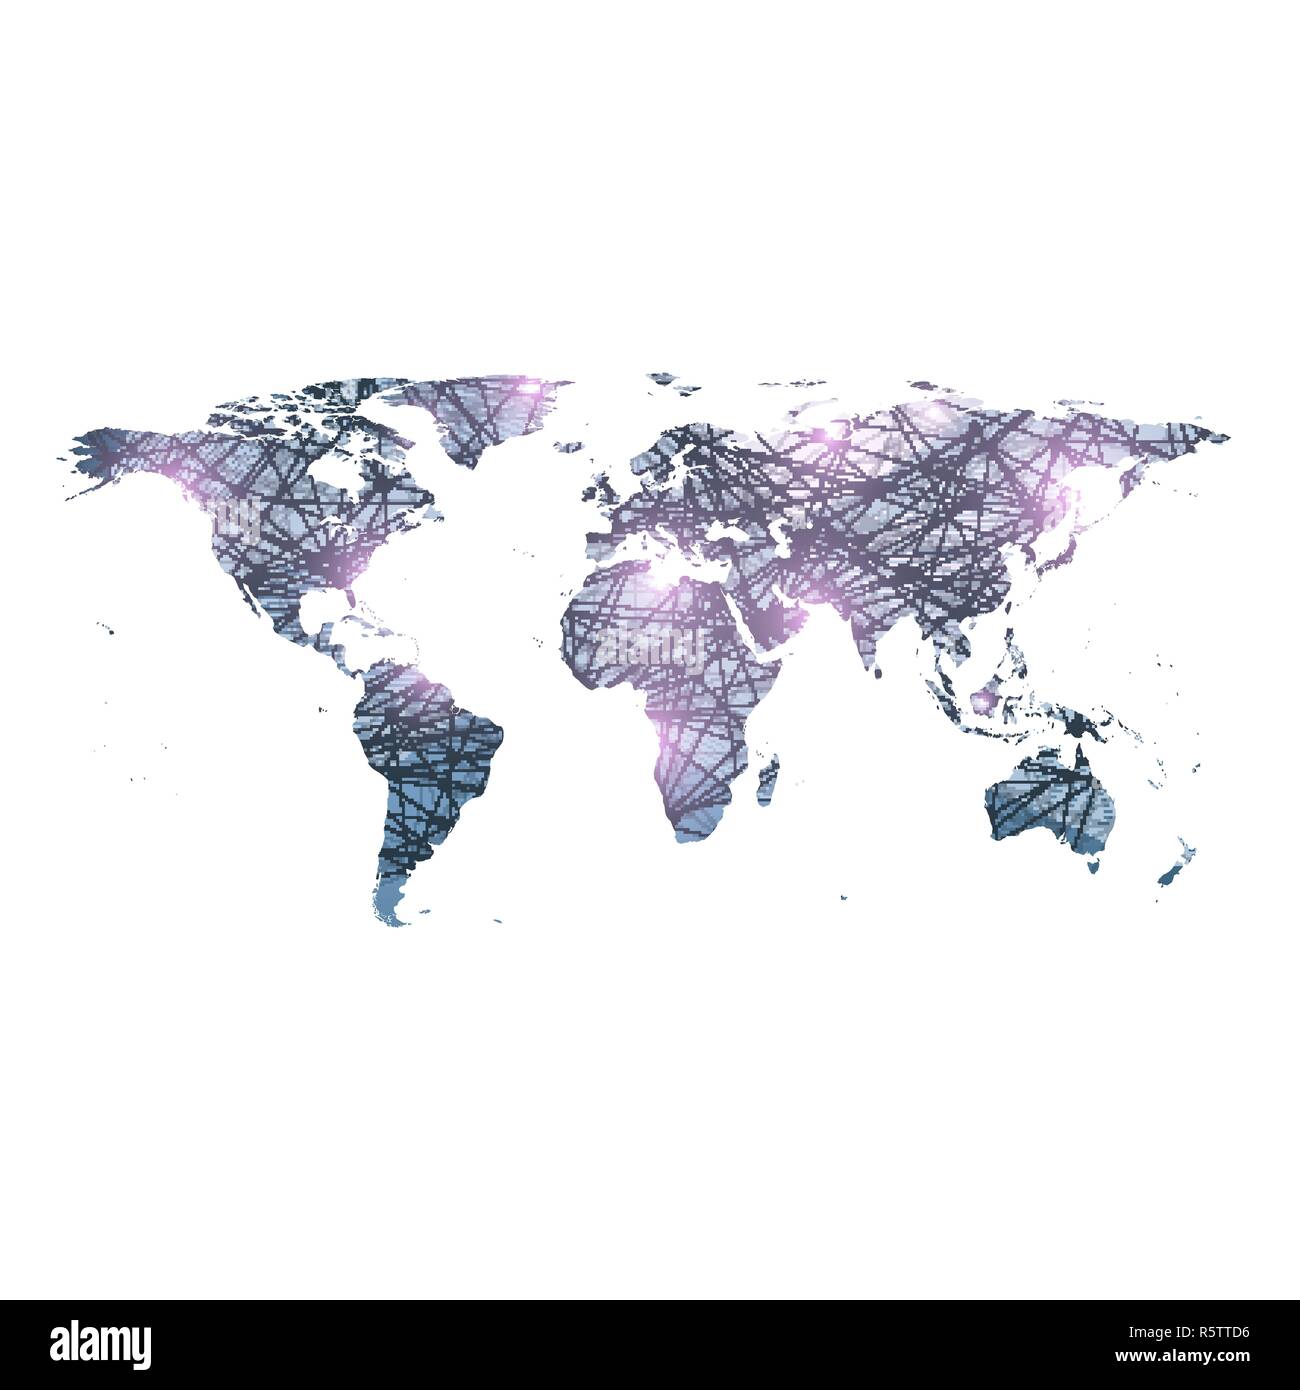 Modèle vectoriel carte du monde avec la technologie global concept de mise en réseau. Les connexions réseau. La visualisation de données numériques. Plexus lignes. Contexte Big Data communication. Toile de perspective Illustration de Vecteur